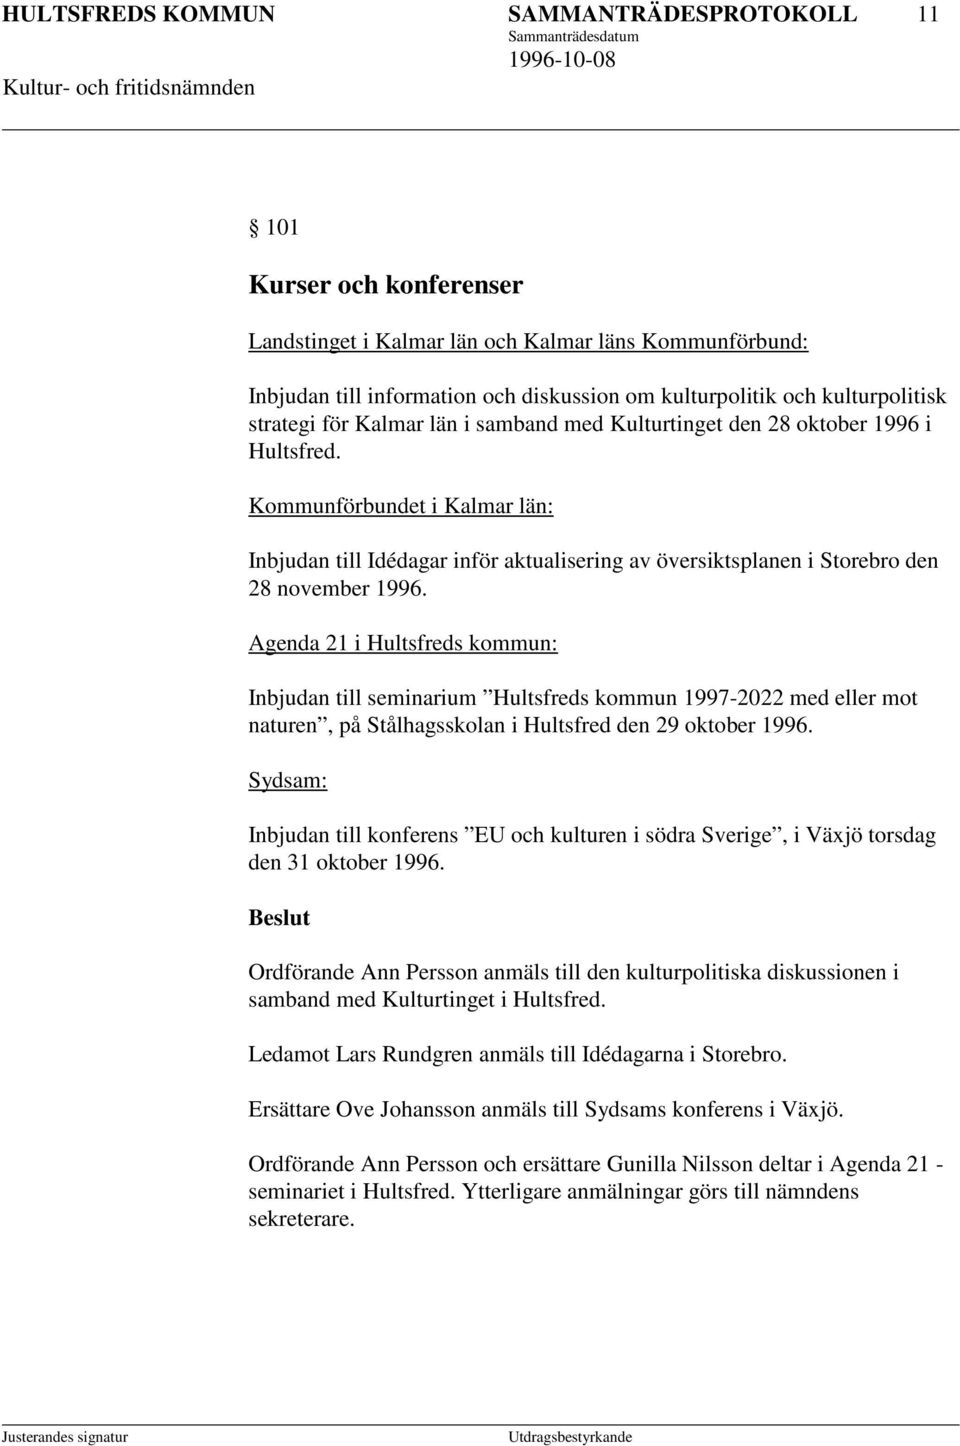 Kommunförbundet i Kalmar län: Inbjudan till Idédagar inför aktualisering av översiktsplanen i Storebro den 28 november 1996.